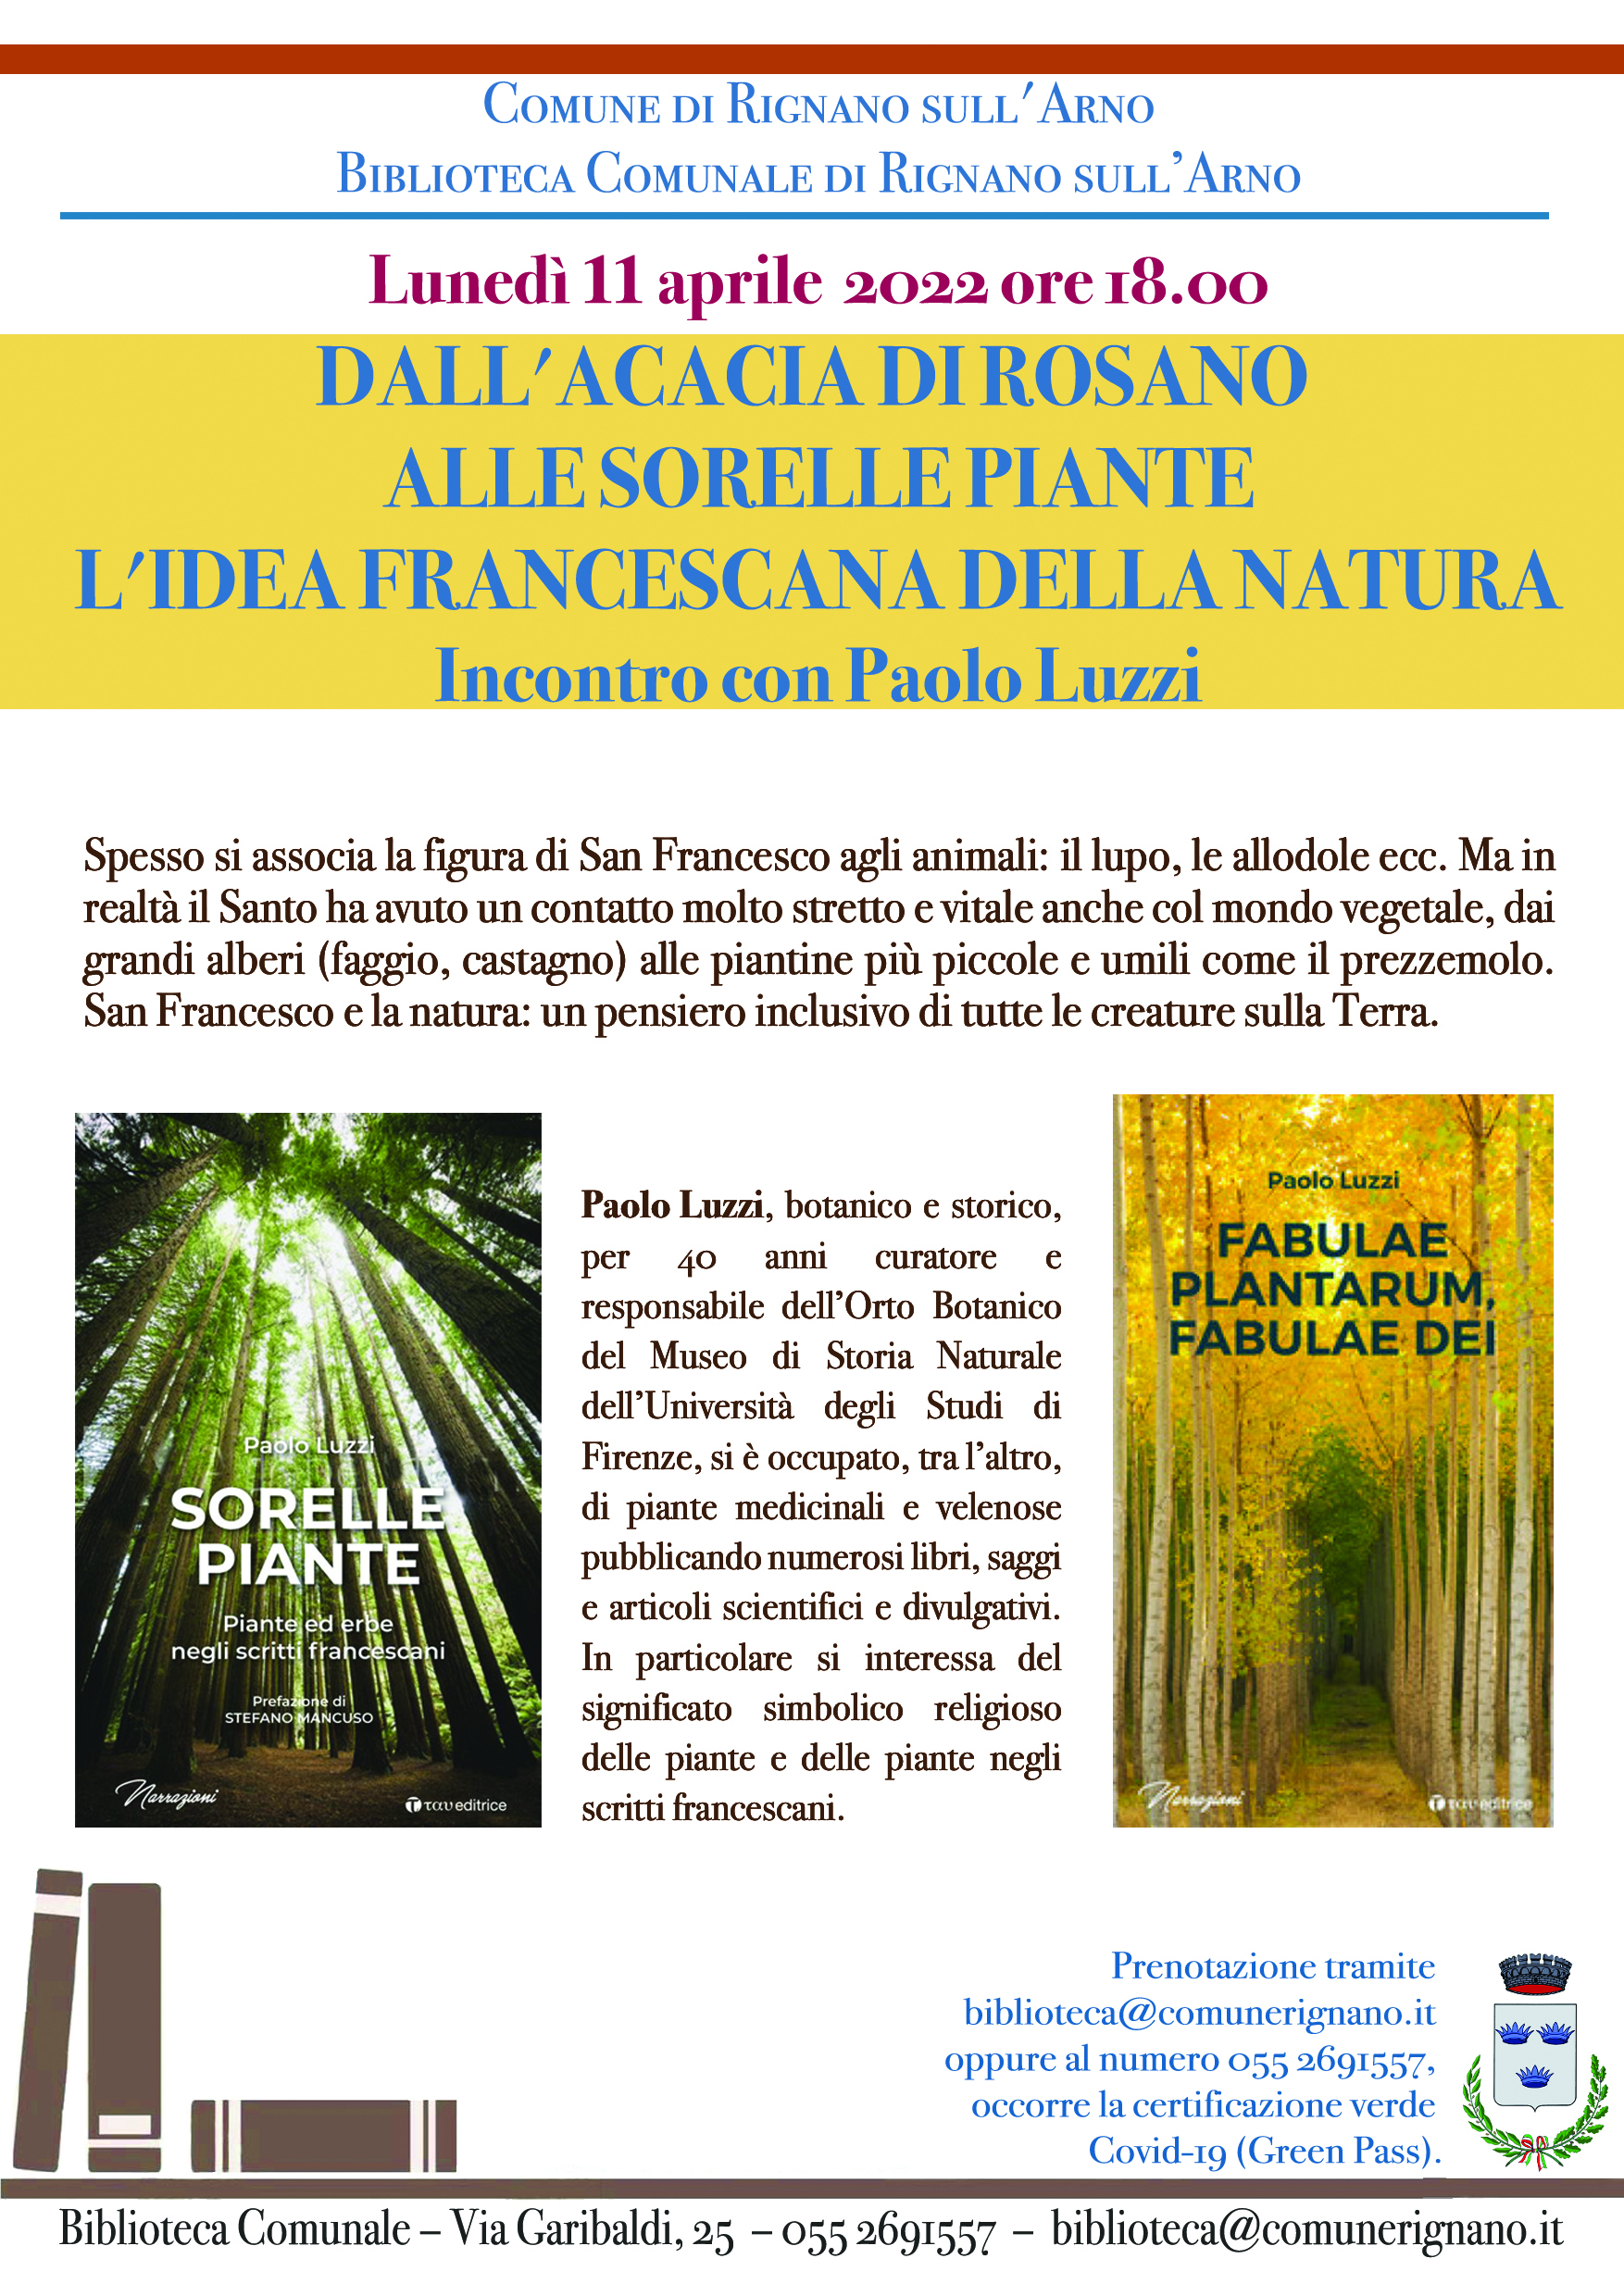 Biblioteca di Rignano, incontro con Paolo Luzzi